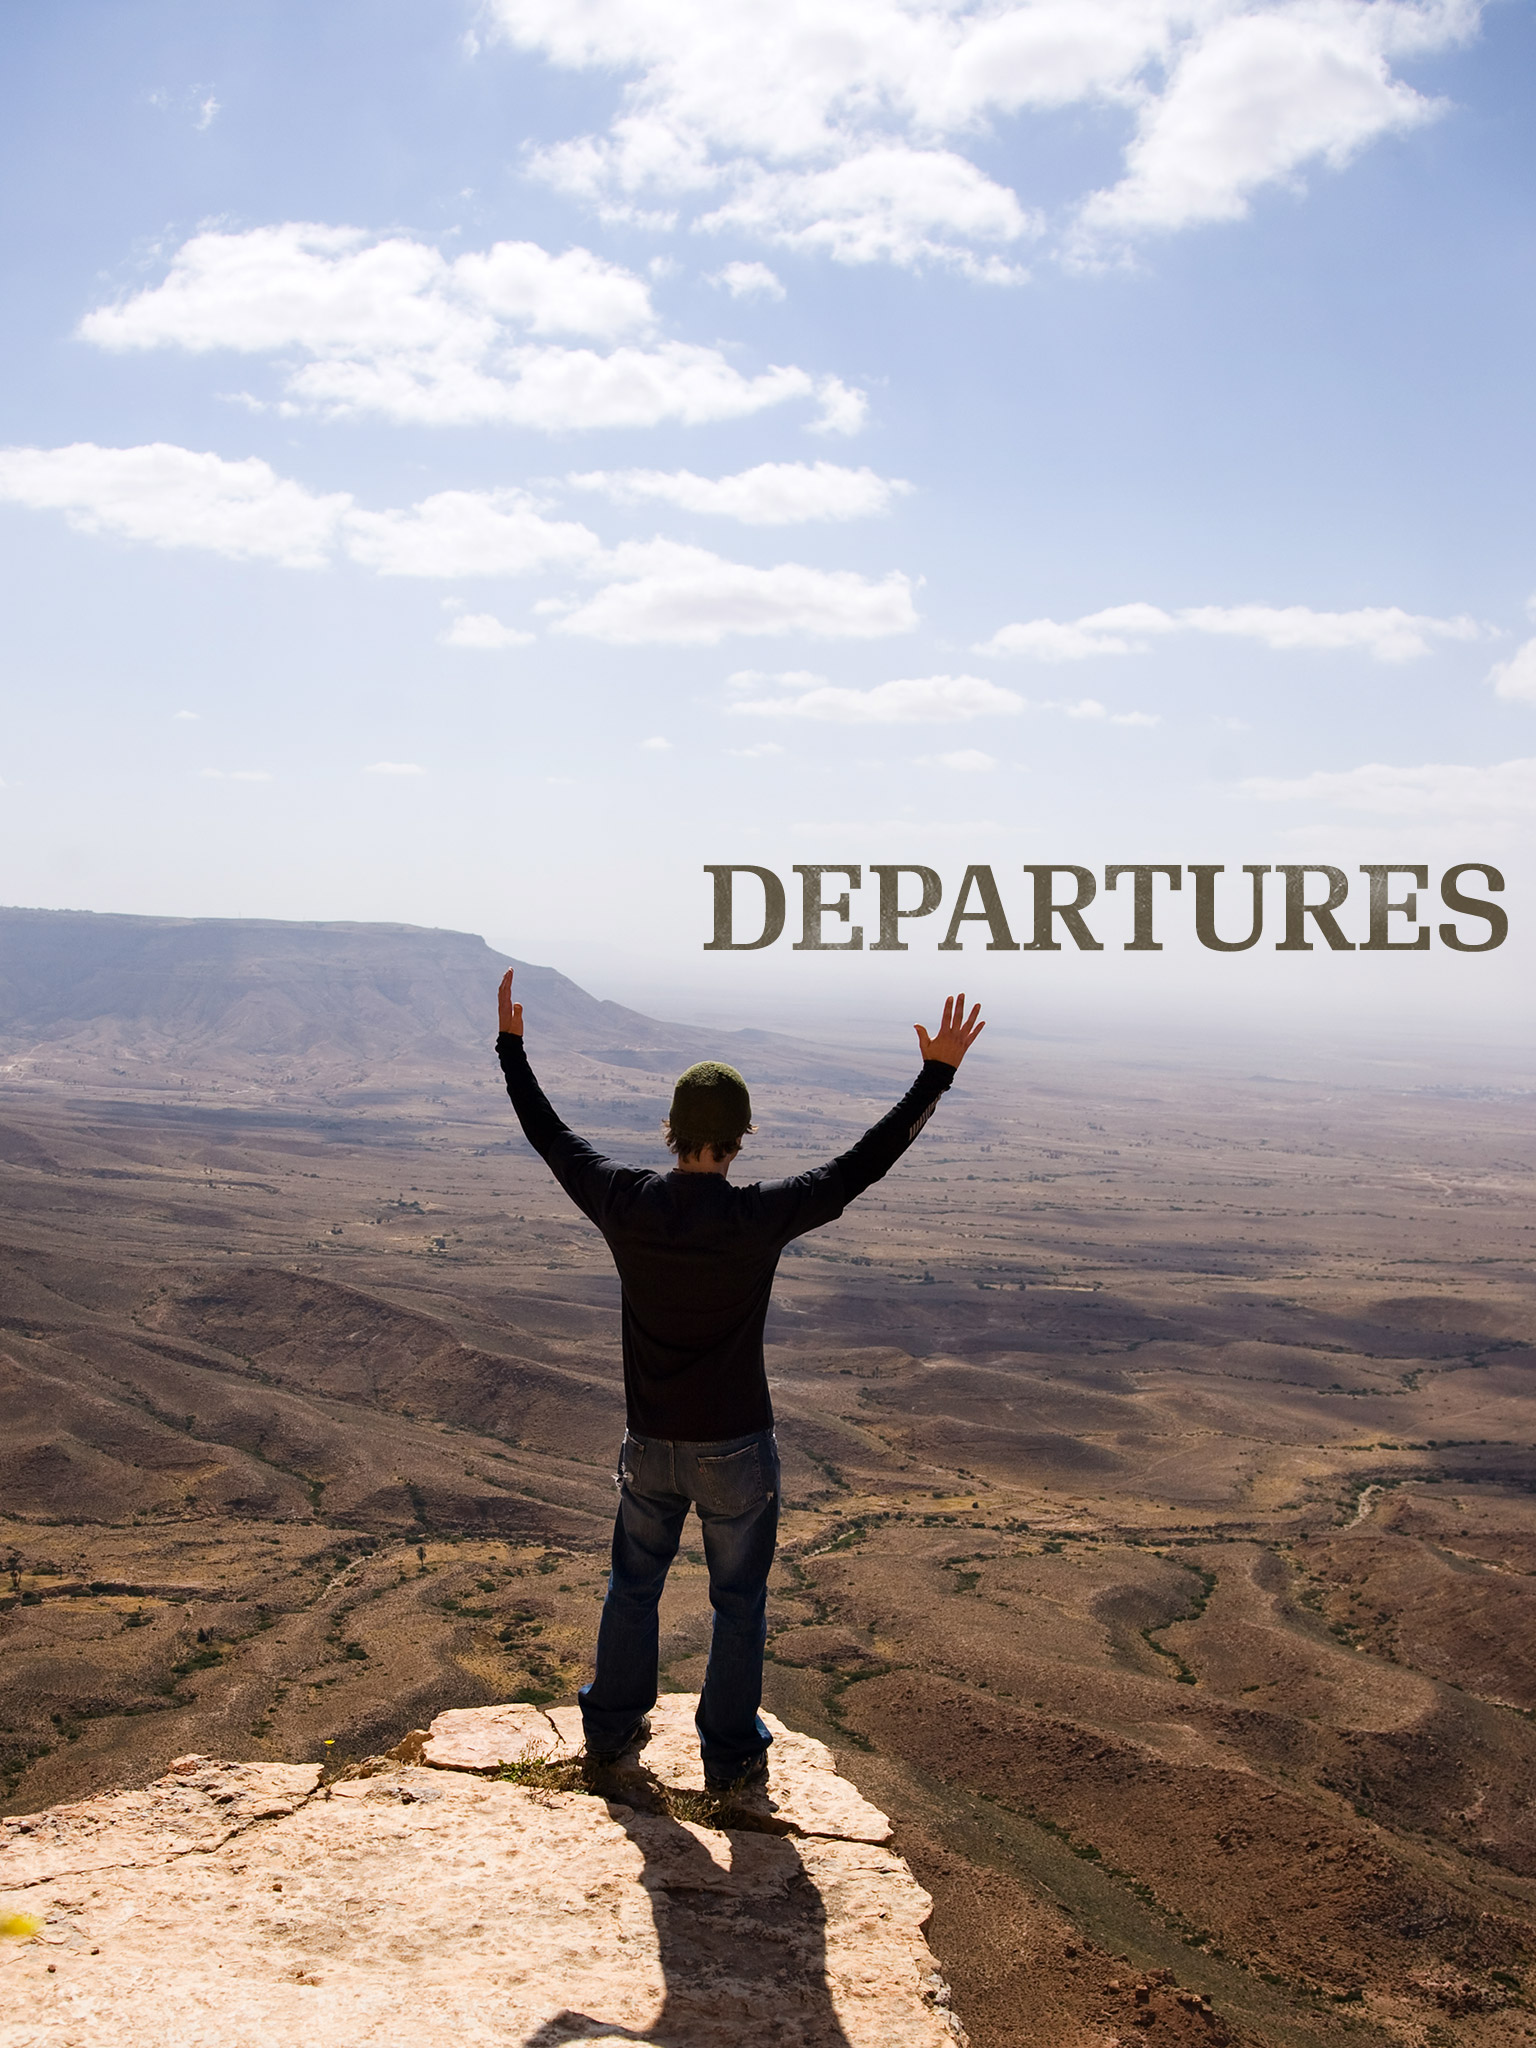 departures travel show watch online